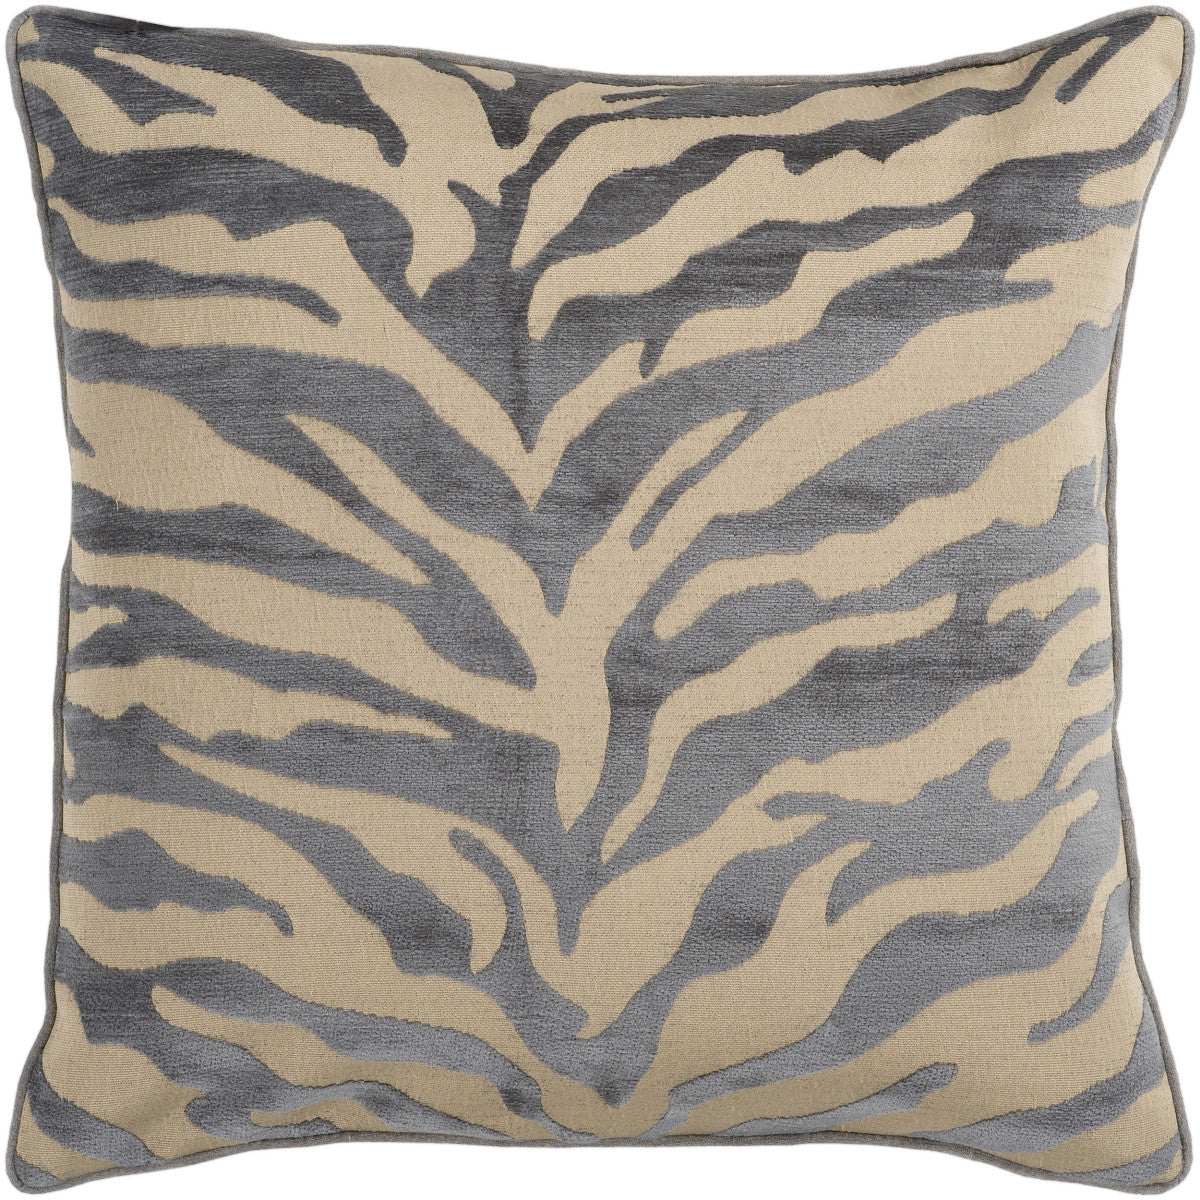 Surya Velvet Zebra Eye-catching Patterned JS-032 Pillow